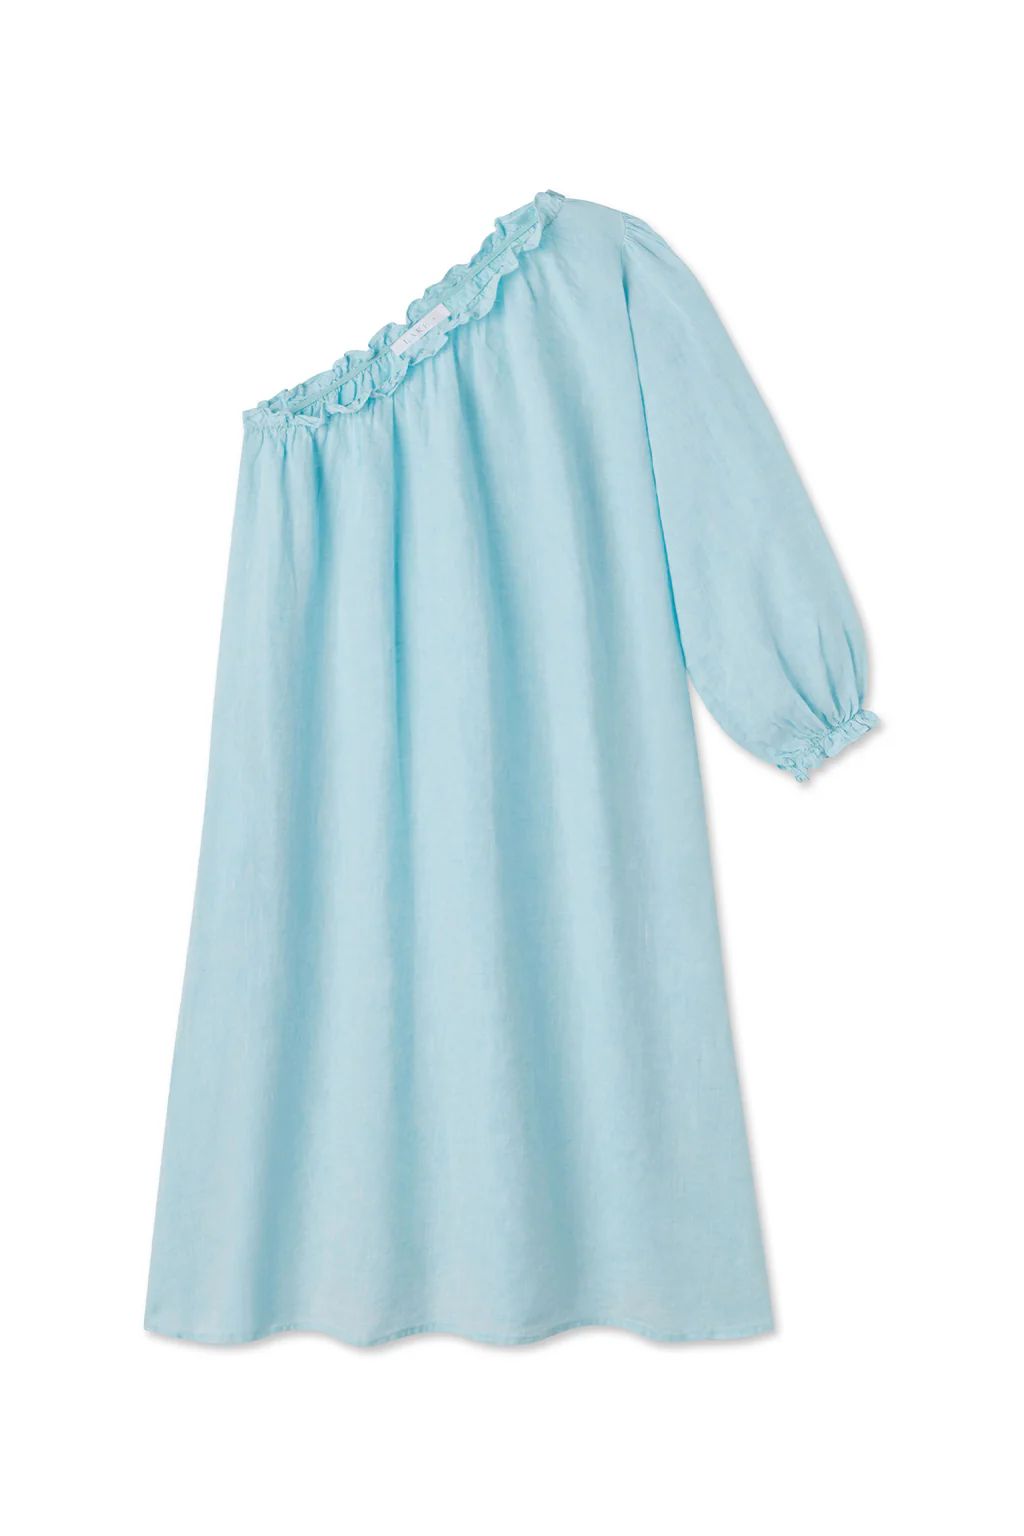 Milly Dress in Aqua Linen | Lake Pajamas